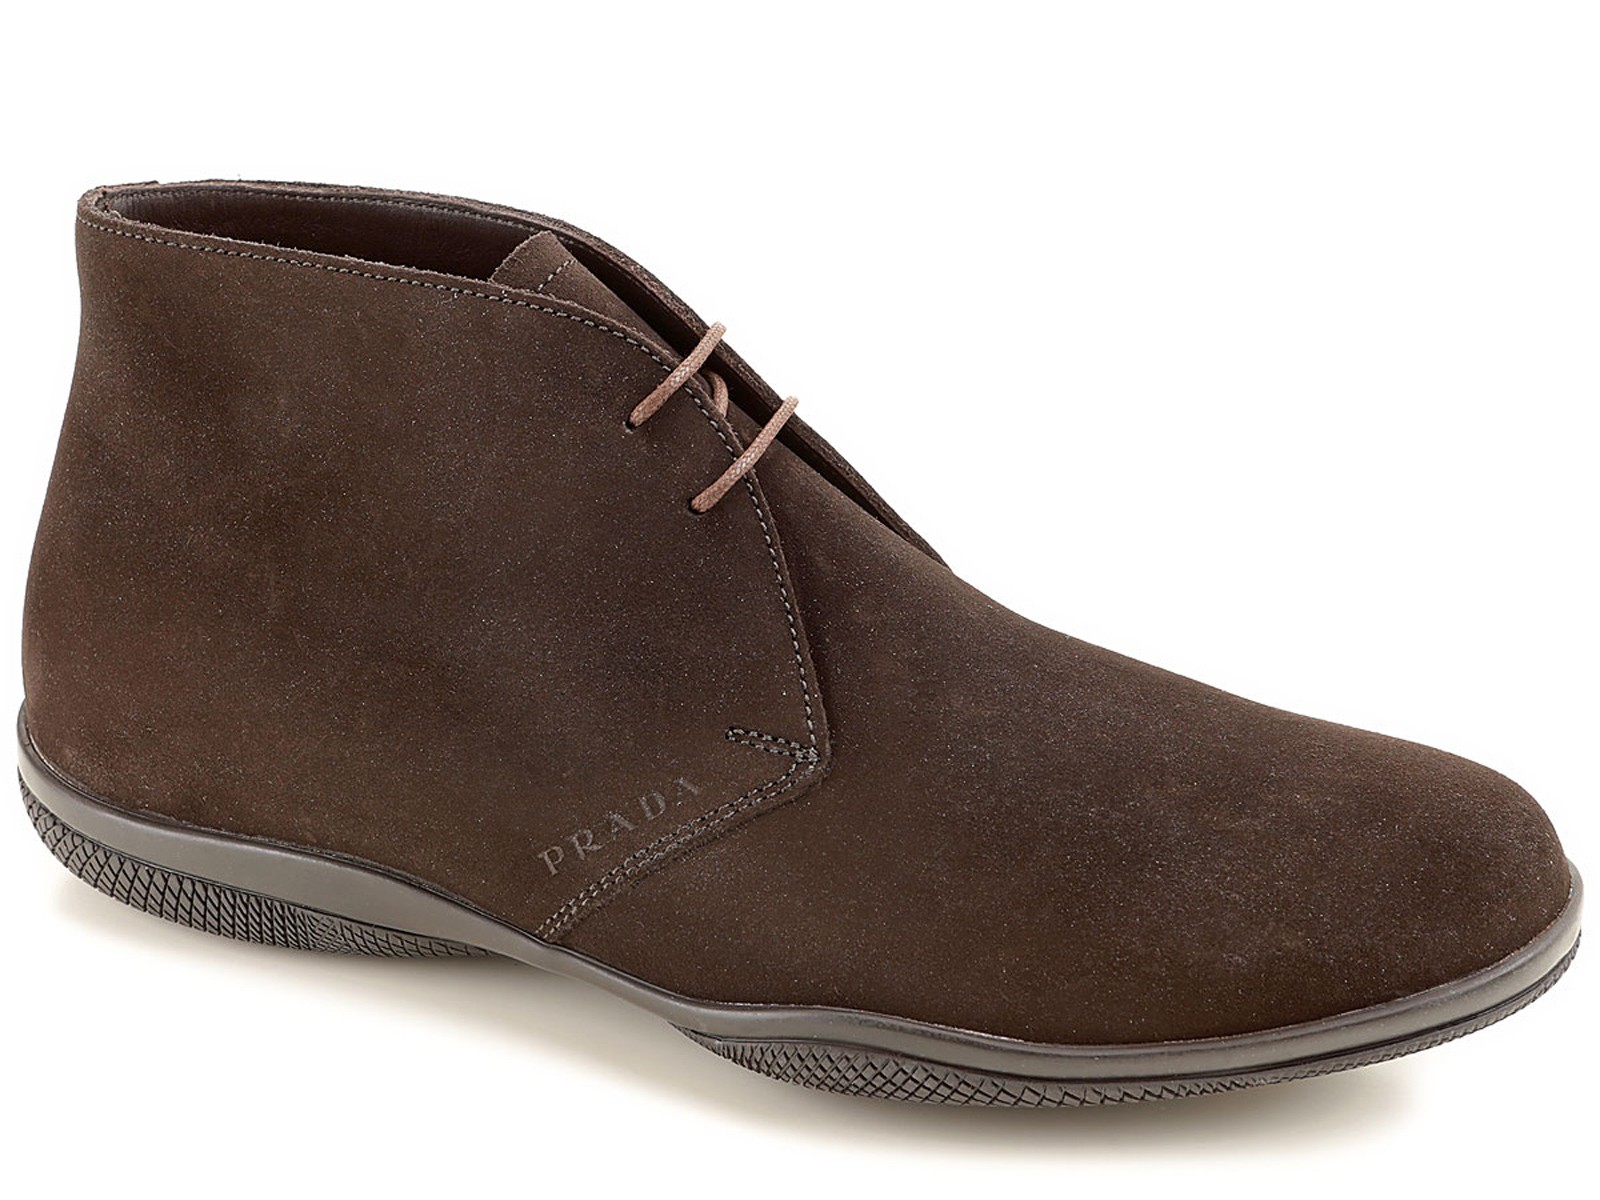 Prada men's desert boots in Dark Brown Suede leather, Mod. 4T2107 4G5 F0003  - 7Store